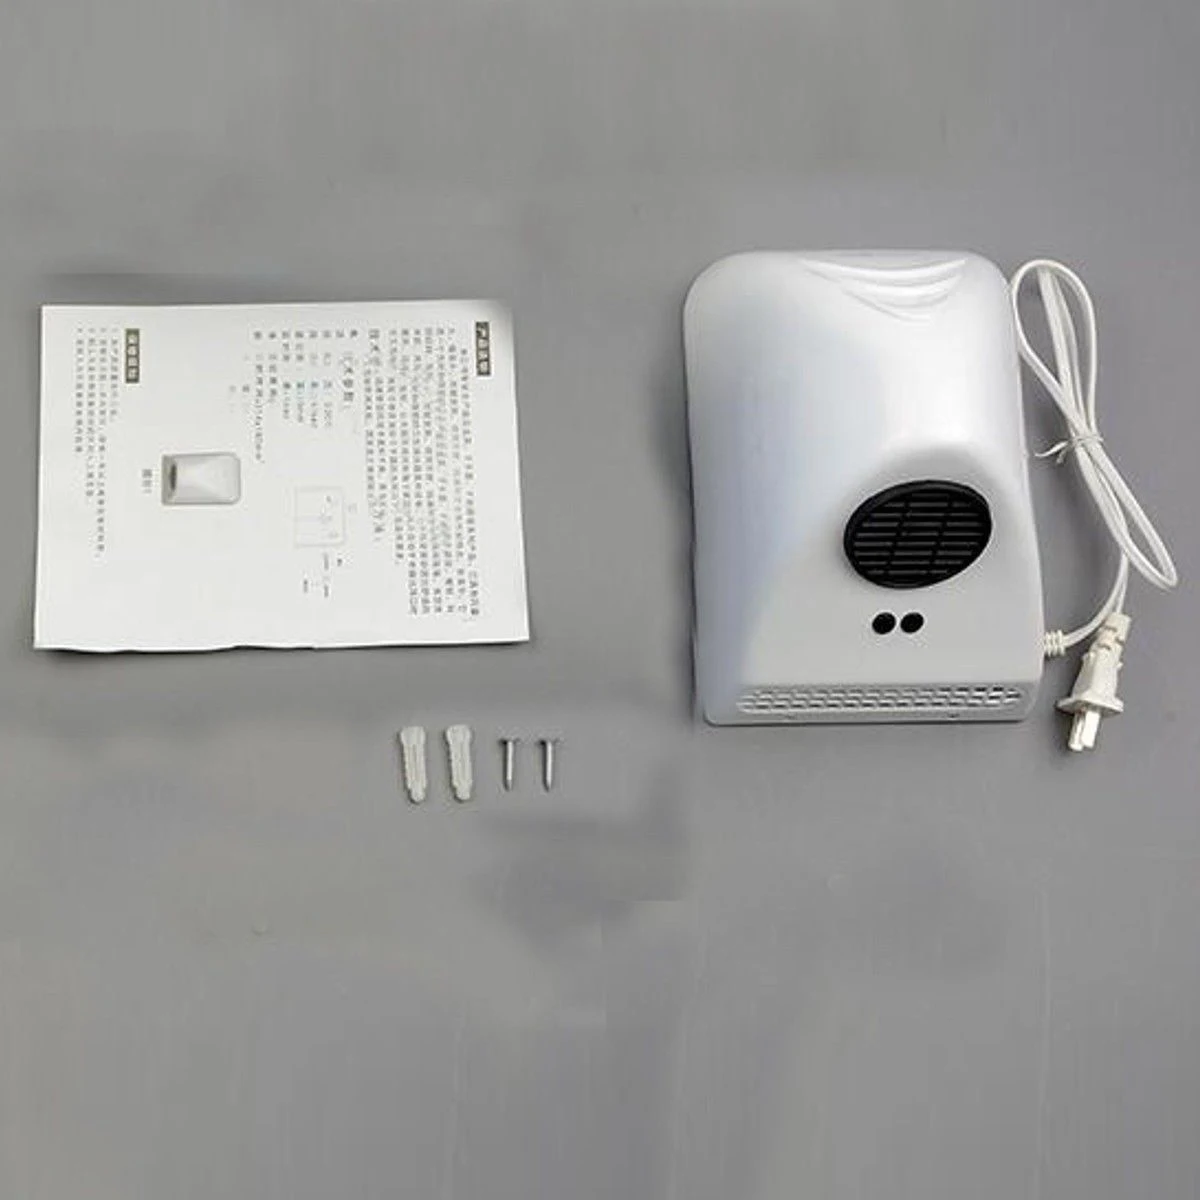 1000 Вт сушилка для рук бытовой фен для волос cушилка для рук для ванной комнаты Электрический Автоматическая Индукционная руки сушки устройства США Plug